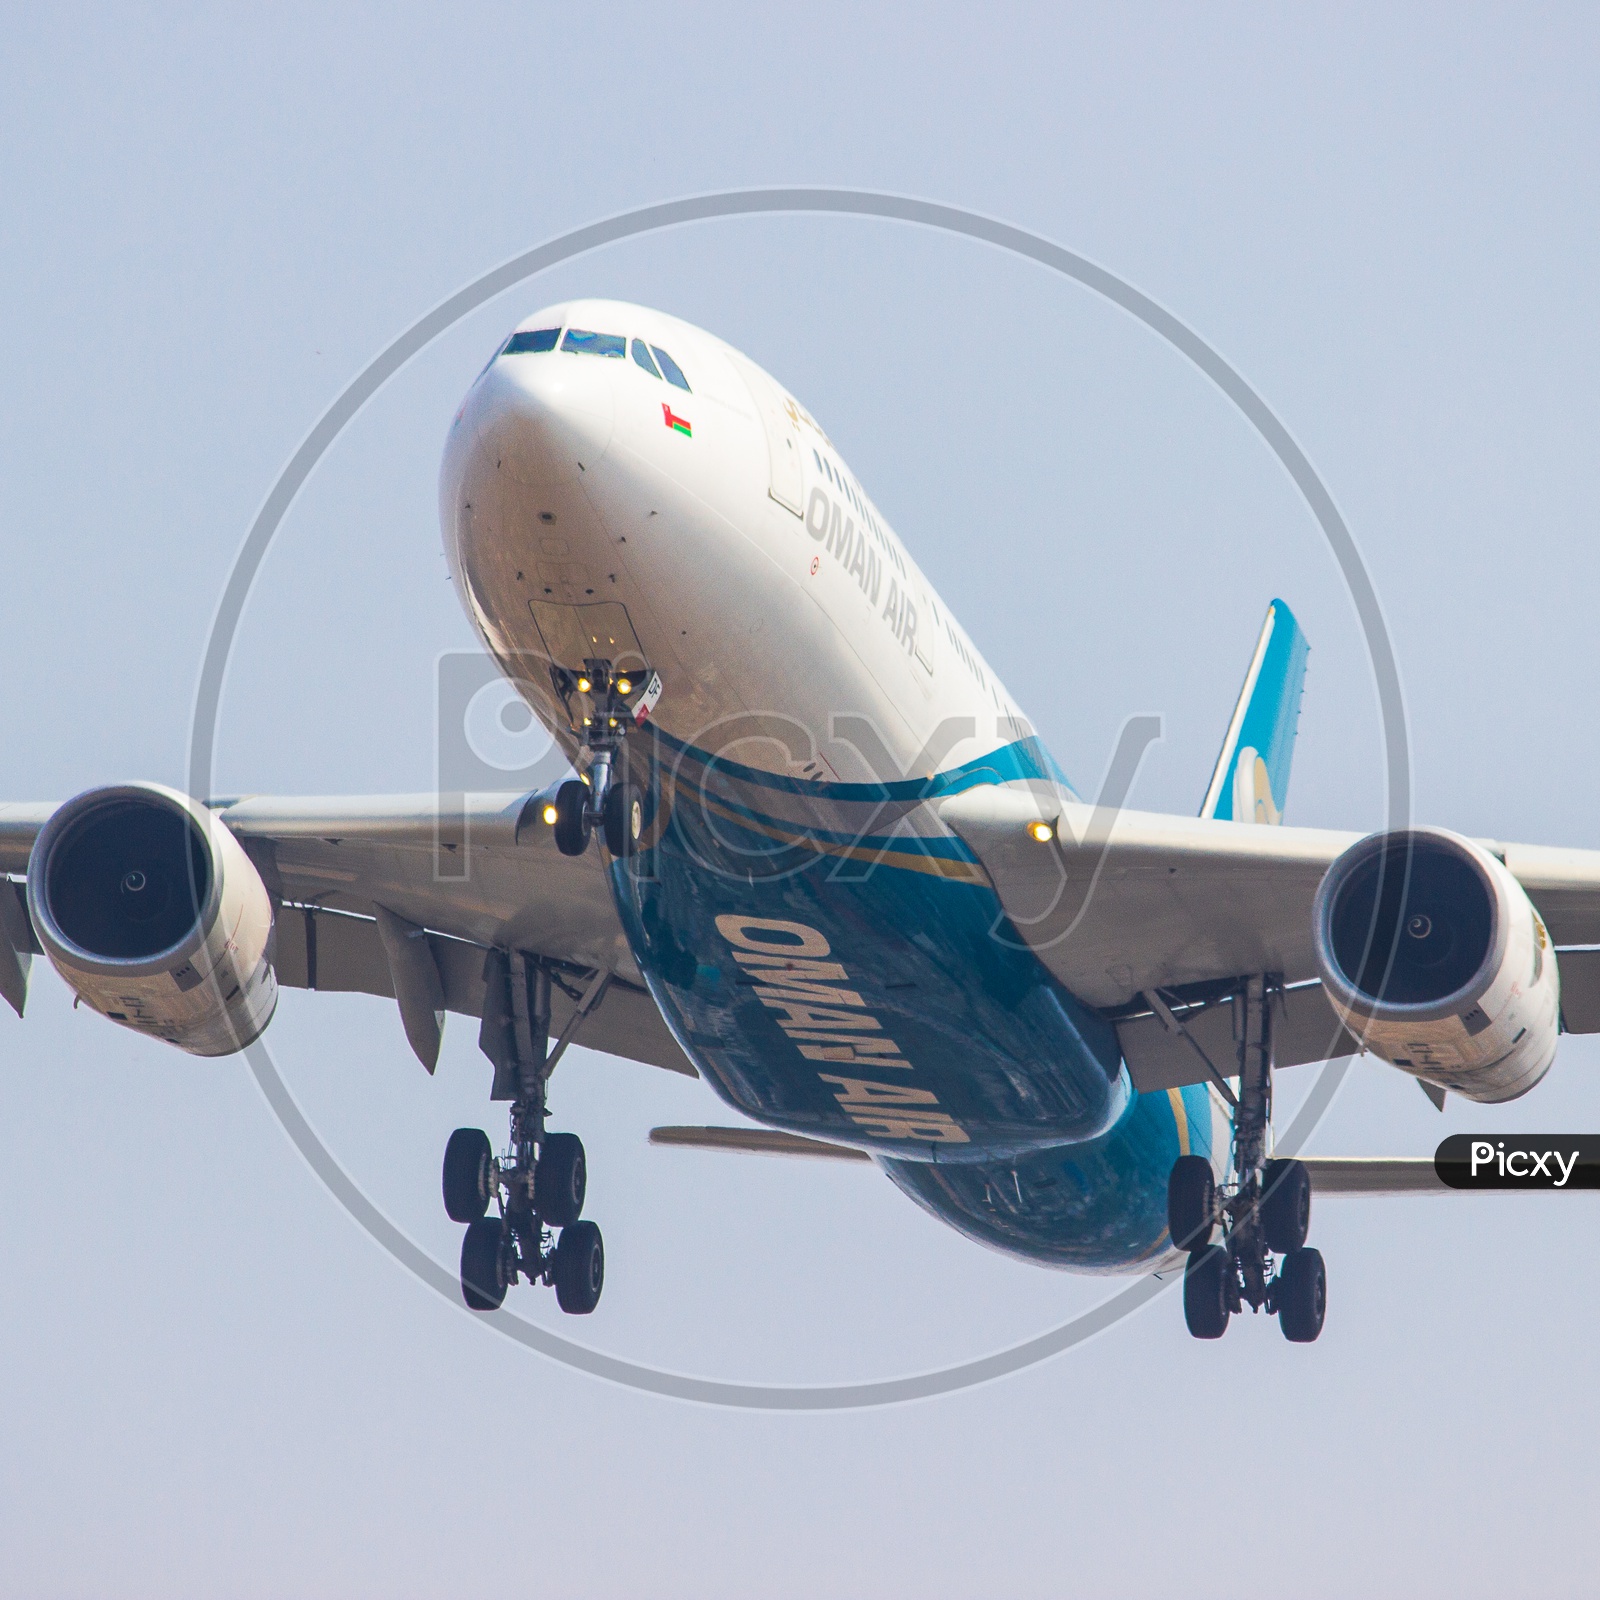 Oman air A330